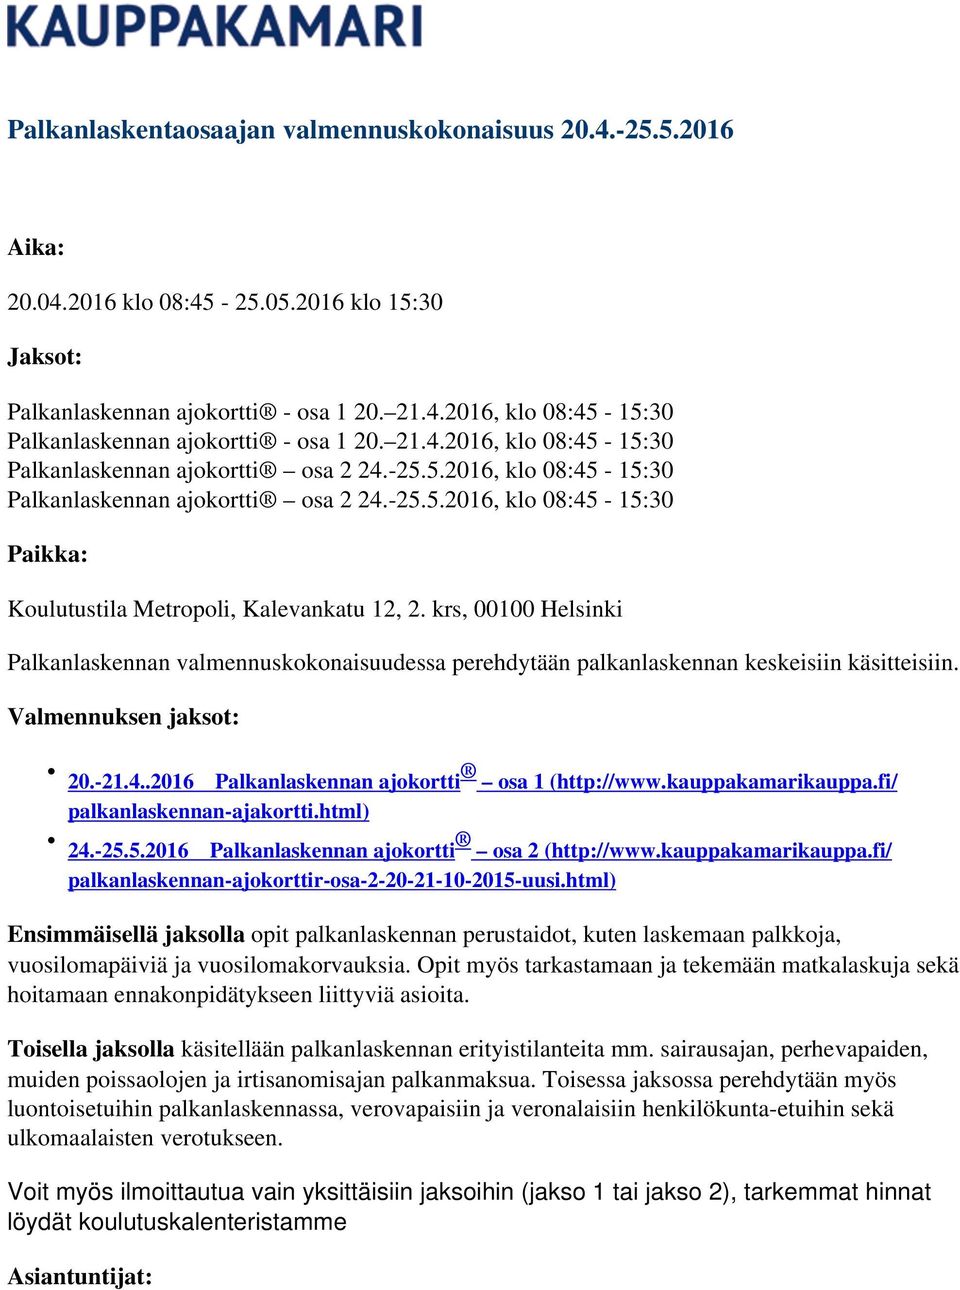 krs, 00100 Helsinki Palkanlaskennan valmennuskokonaisuudessa perehdytään palkanlaskennan keskeisiin käsitteisiin. Valmennuksen jaksot: 20.-21.4..2016 Palkanlaskennan ajokortti osa 1 (http://www.